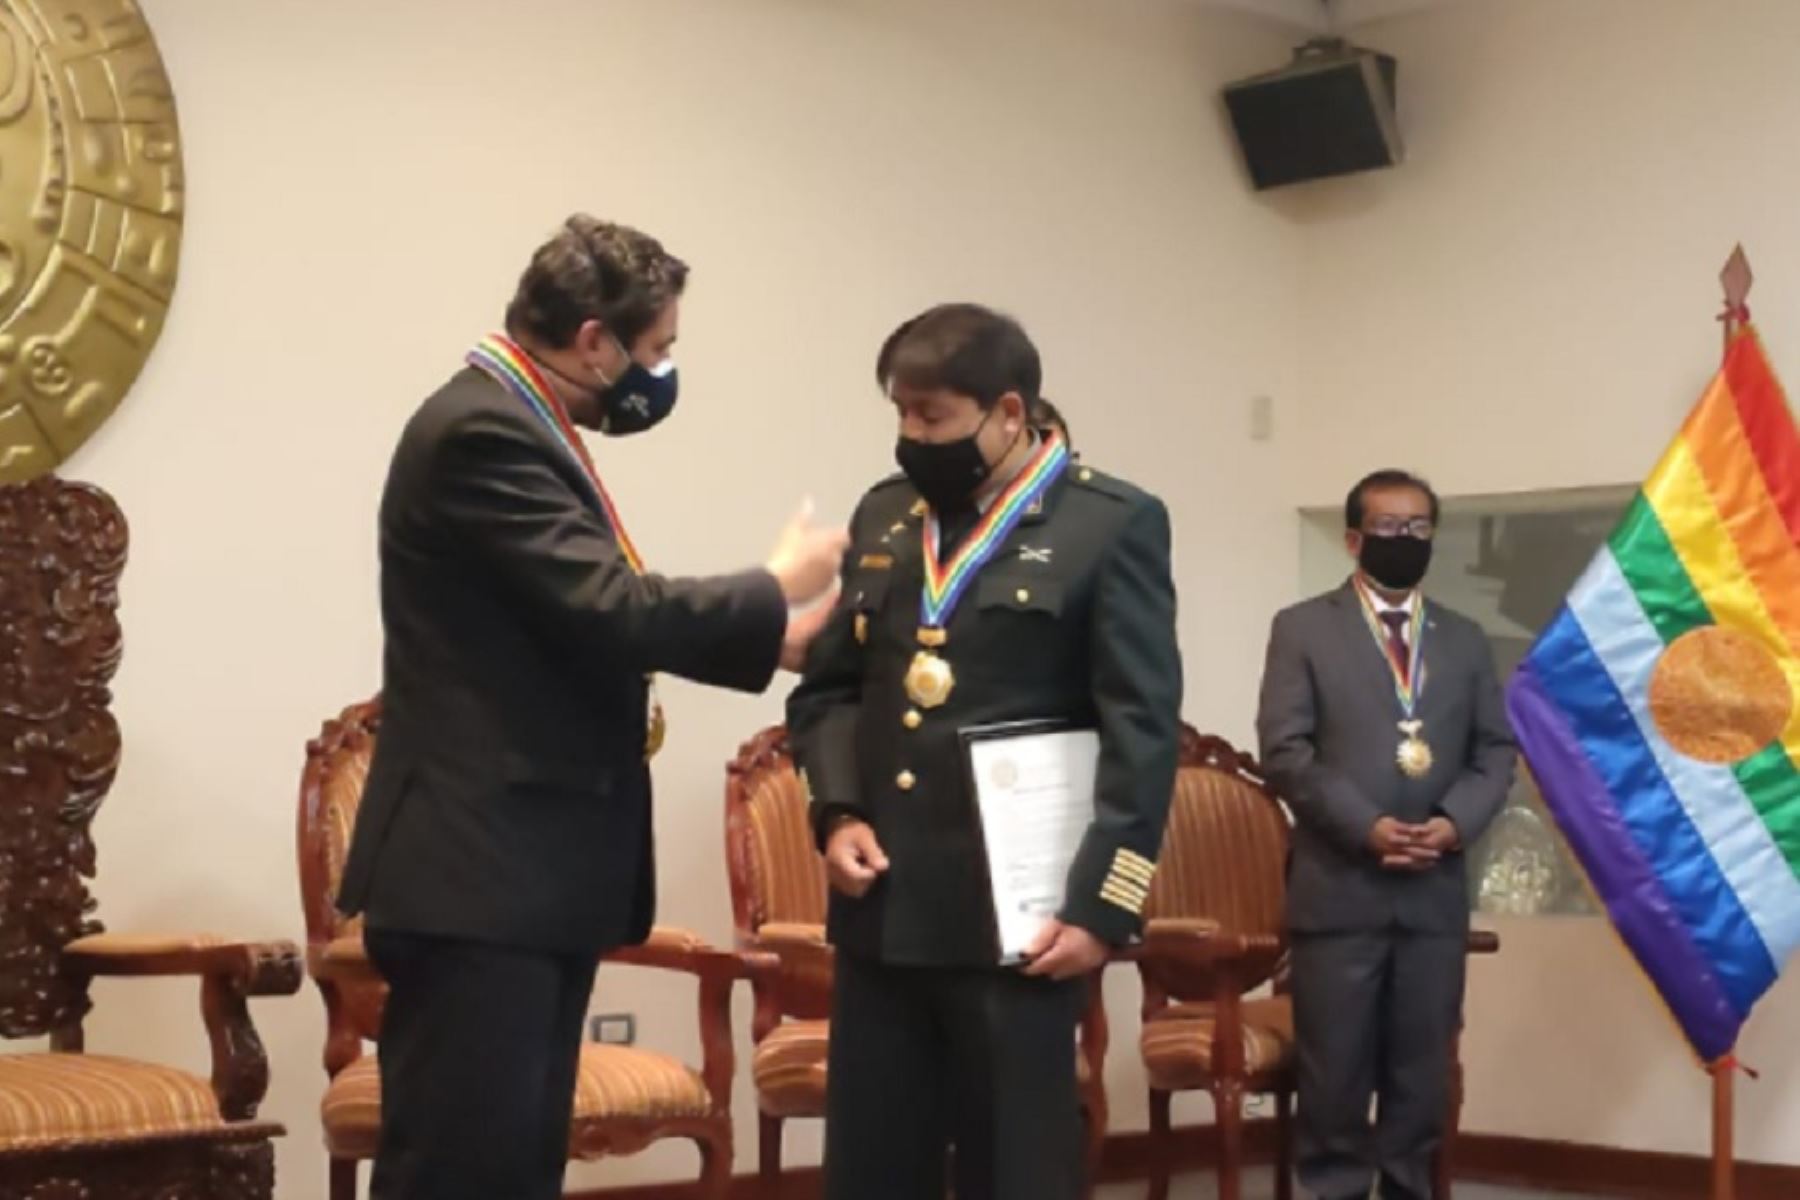 La Municipalidad Provincial de Cusco le entregó la Medalla de la Ciudad al coronel PNP Julio César Becerra Cámara, en reconocimiento a su valerosa acción durante la captura del máximo cabecilla terrorista Abimael Guzmán Reynoso, el 12 de setiembre de 1992.